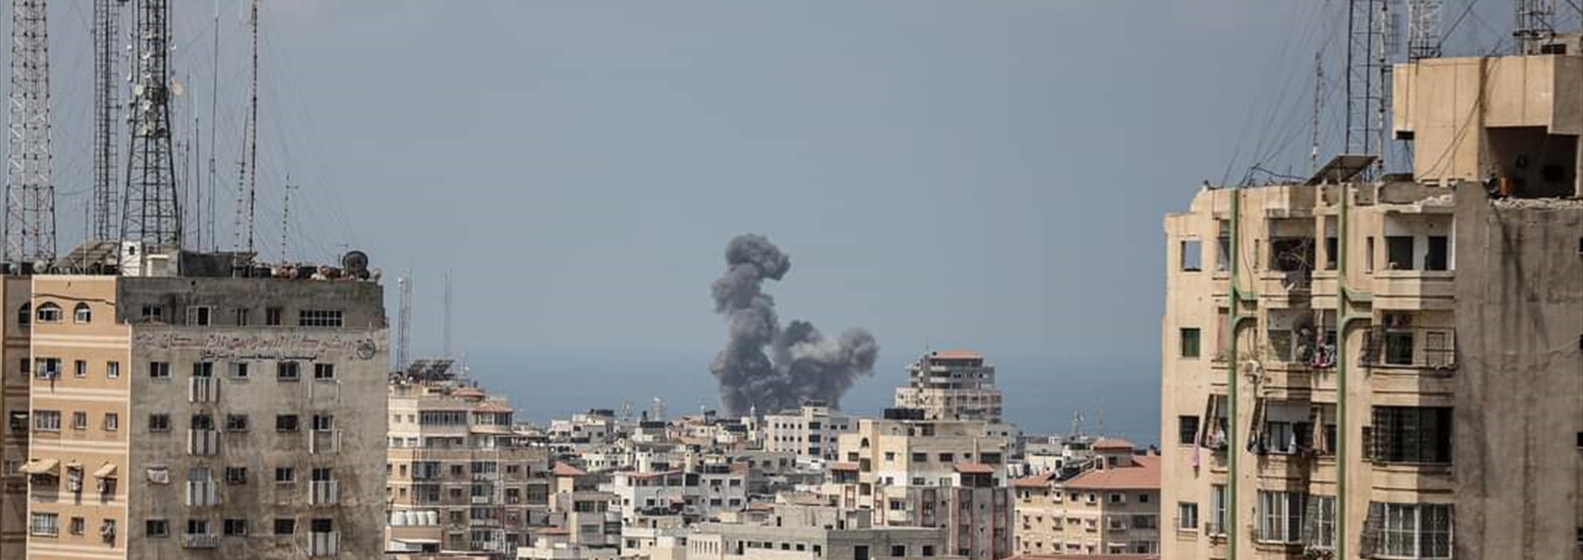 (شاهد) الاحتلال يرتكب  جرائم ترقى لمستوى جريمة حرب في قطاع غزة   وتدعو إلى وقف العدوان على القطاع